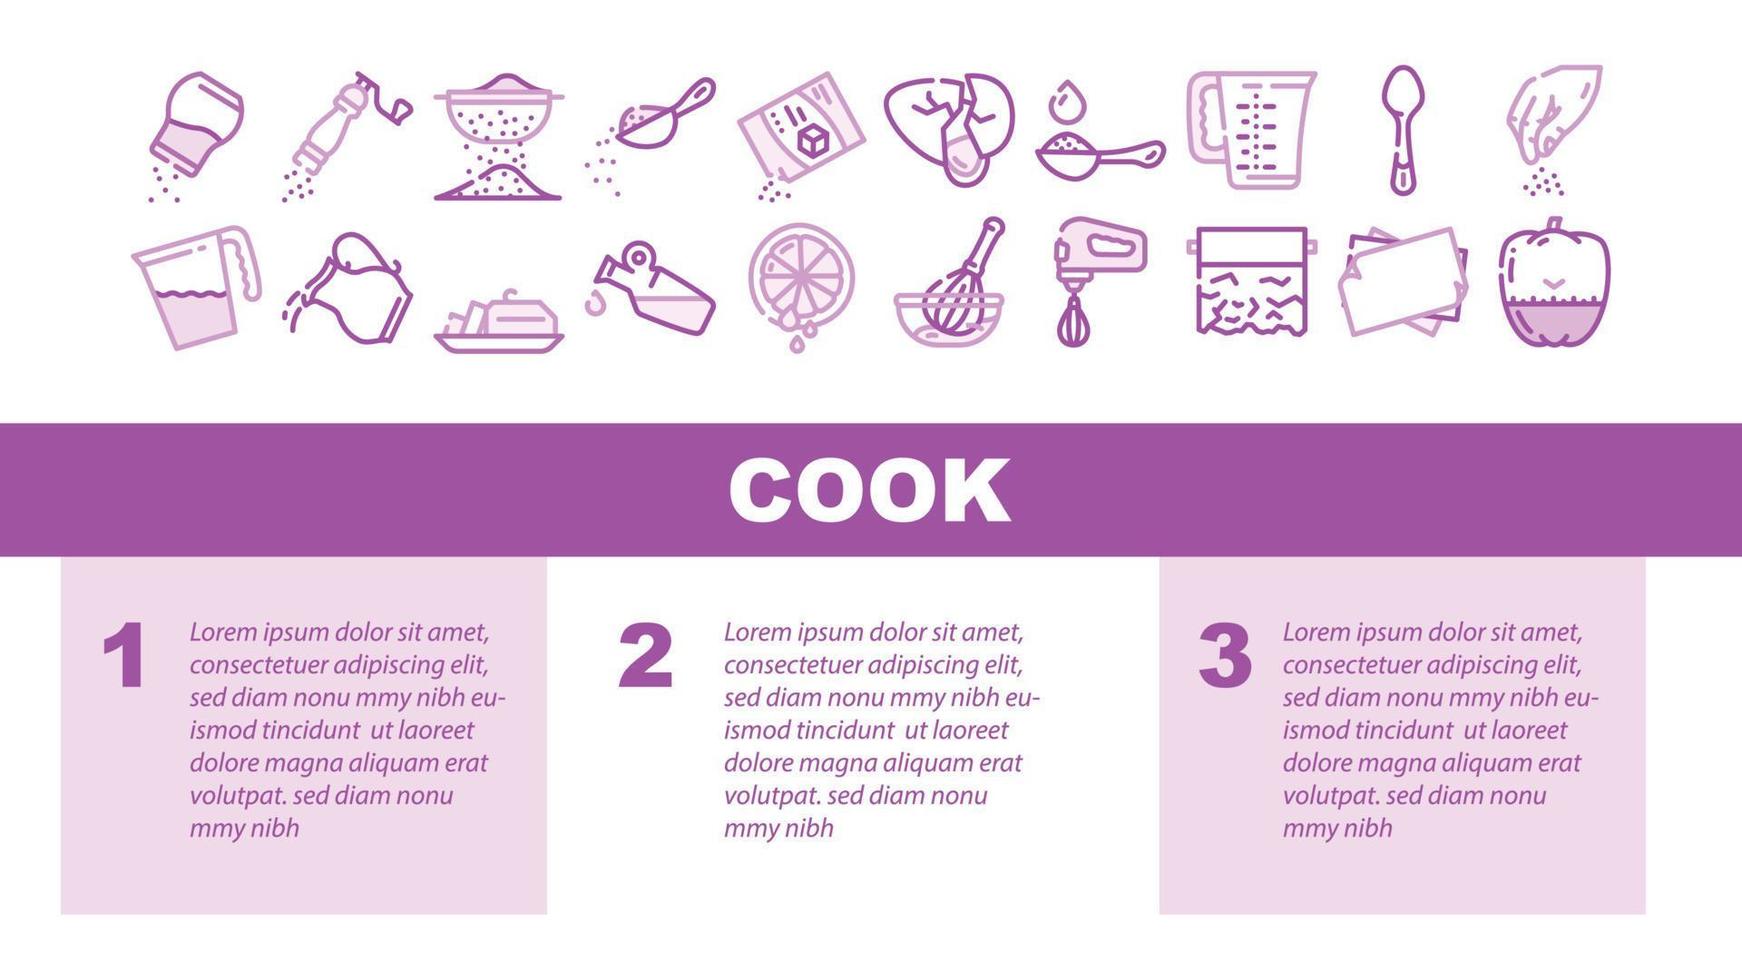 instruções de cozinheiro para preparar vetor de cabeçalho de pouso de alimentos